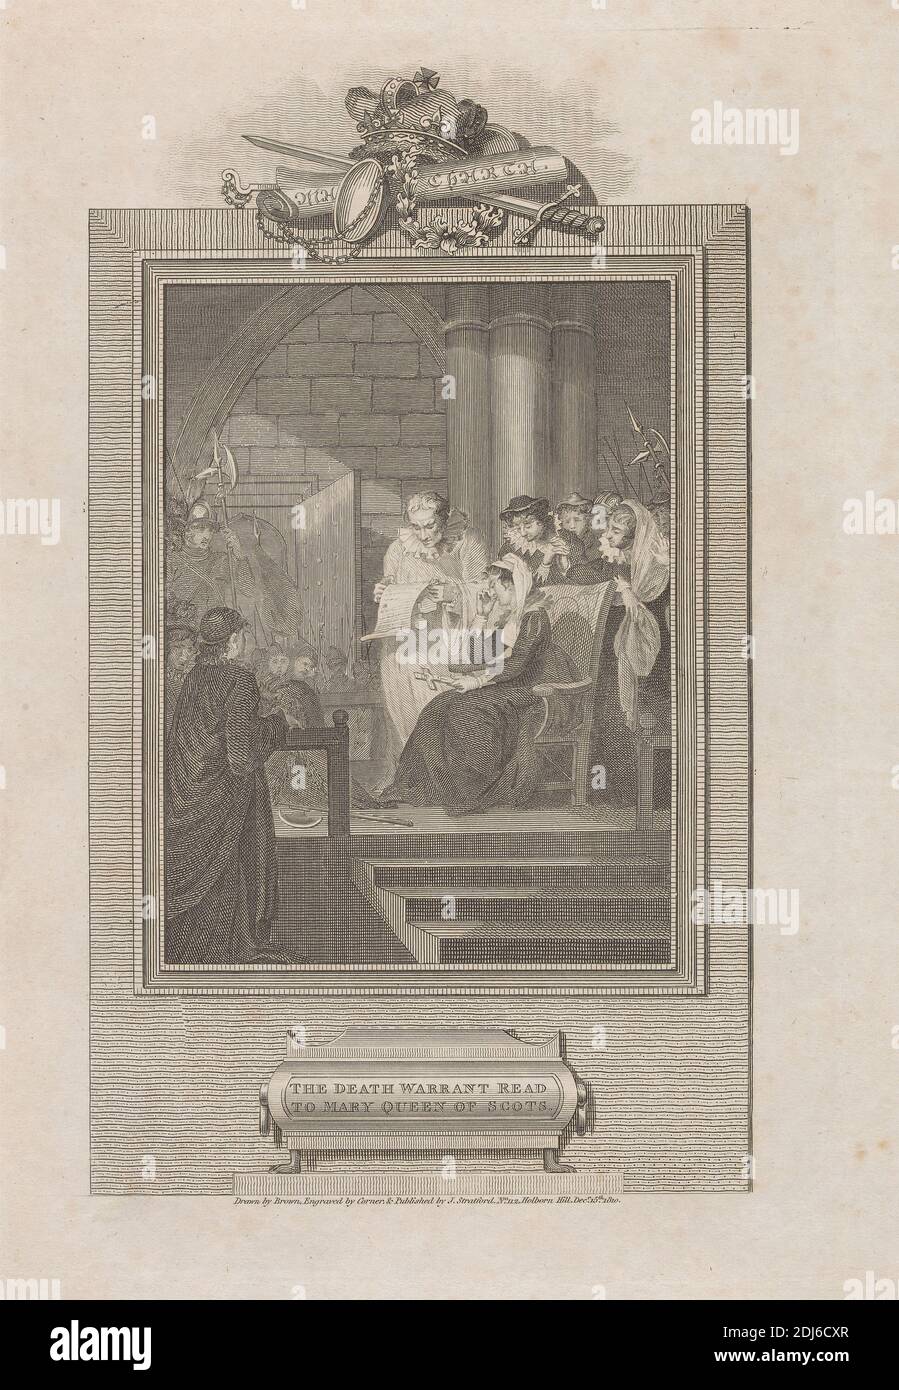 The Death Warrant Read to Mary Queen of Scots, Print Made by John Corner, 1788–1825, after Mather Brown, 1761–1831, American, Active in Britain, Published by J. Stratford, Active 1792–1813, British, 1810, Radierung und Liniengravur auf dünnem, leicht strukturiertem, cremefarbenen Wove-Papier, Blatt: 14 × 8 7/8 Zoll (35.6 × 22.5 cm), Platte: 10 5/8 × 7 3/8 Zoll (27 × 18.7 cm), und Bild: 9 7/8 × 5 7/8 Zoll (25.1 × 14.9 cm), Geschichte Gemälde, Interieur, Bademäntel, Zimmer, Lizenzgebühren, Wandteppich, Warrants Stockfoto